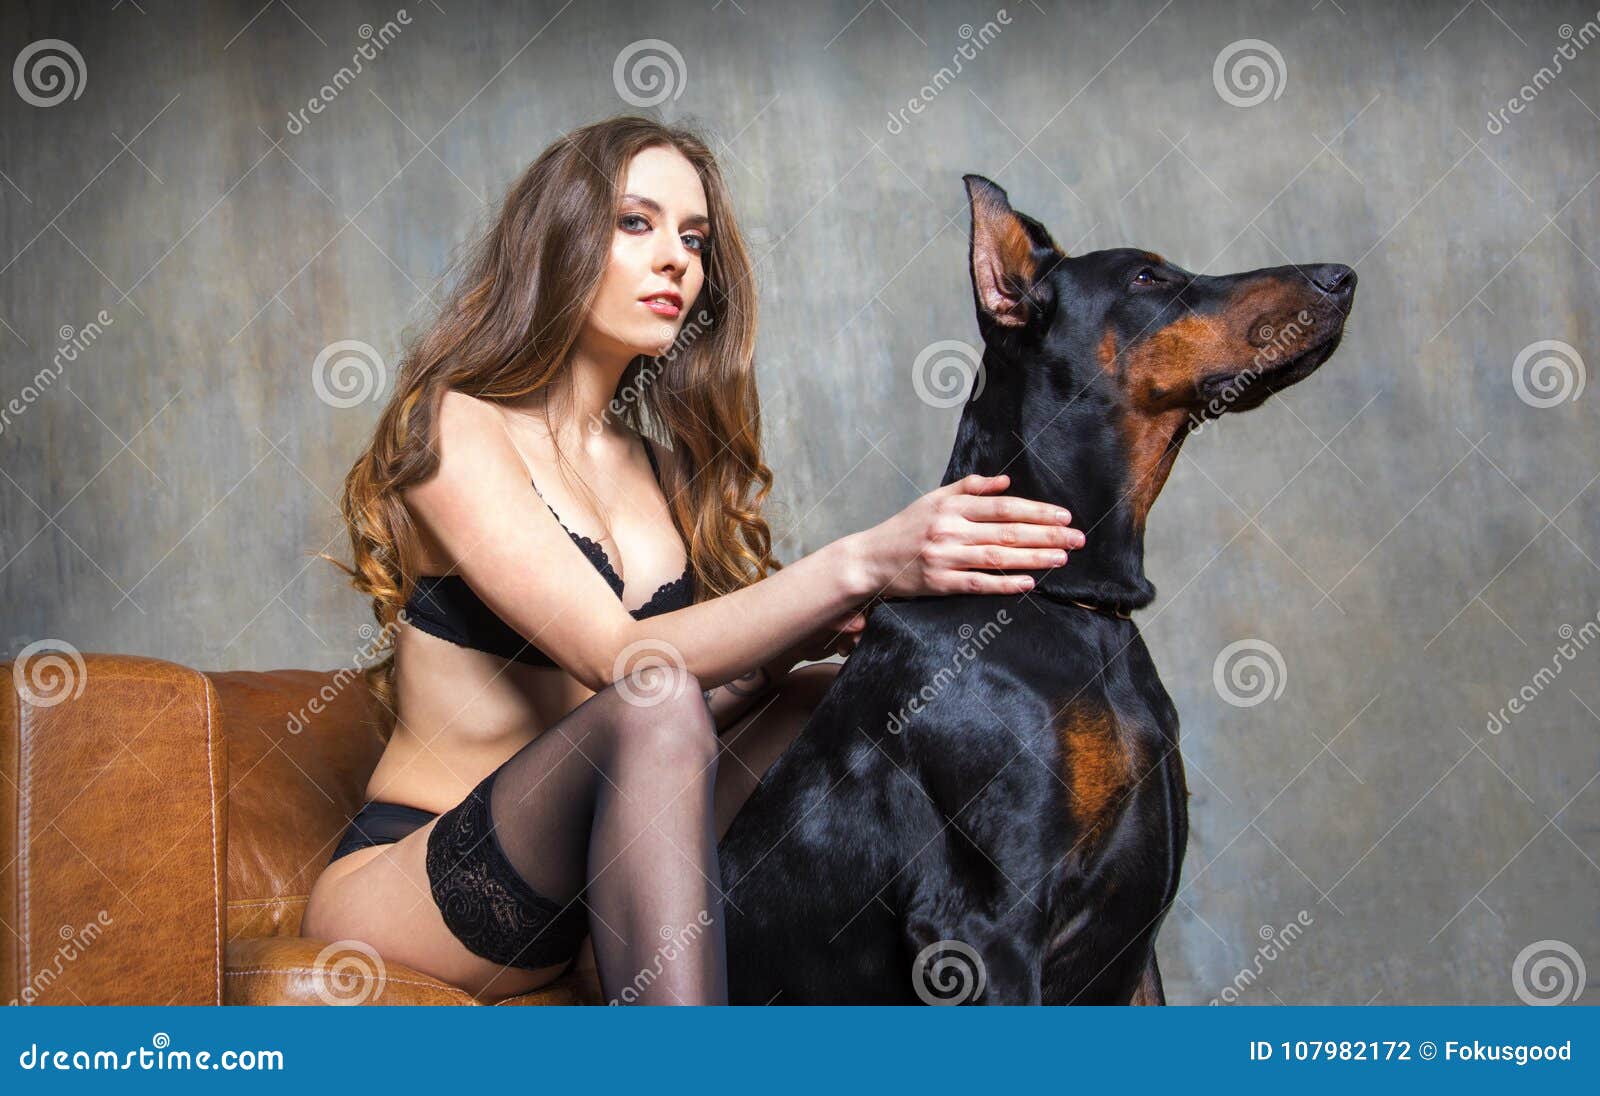 On woman erotic dog Woman says